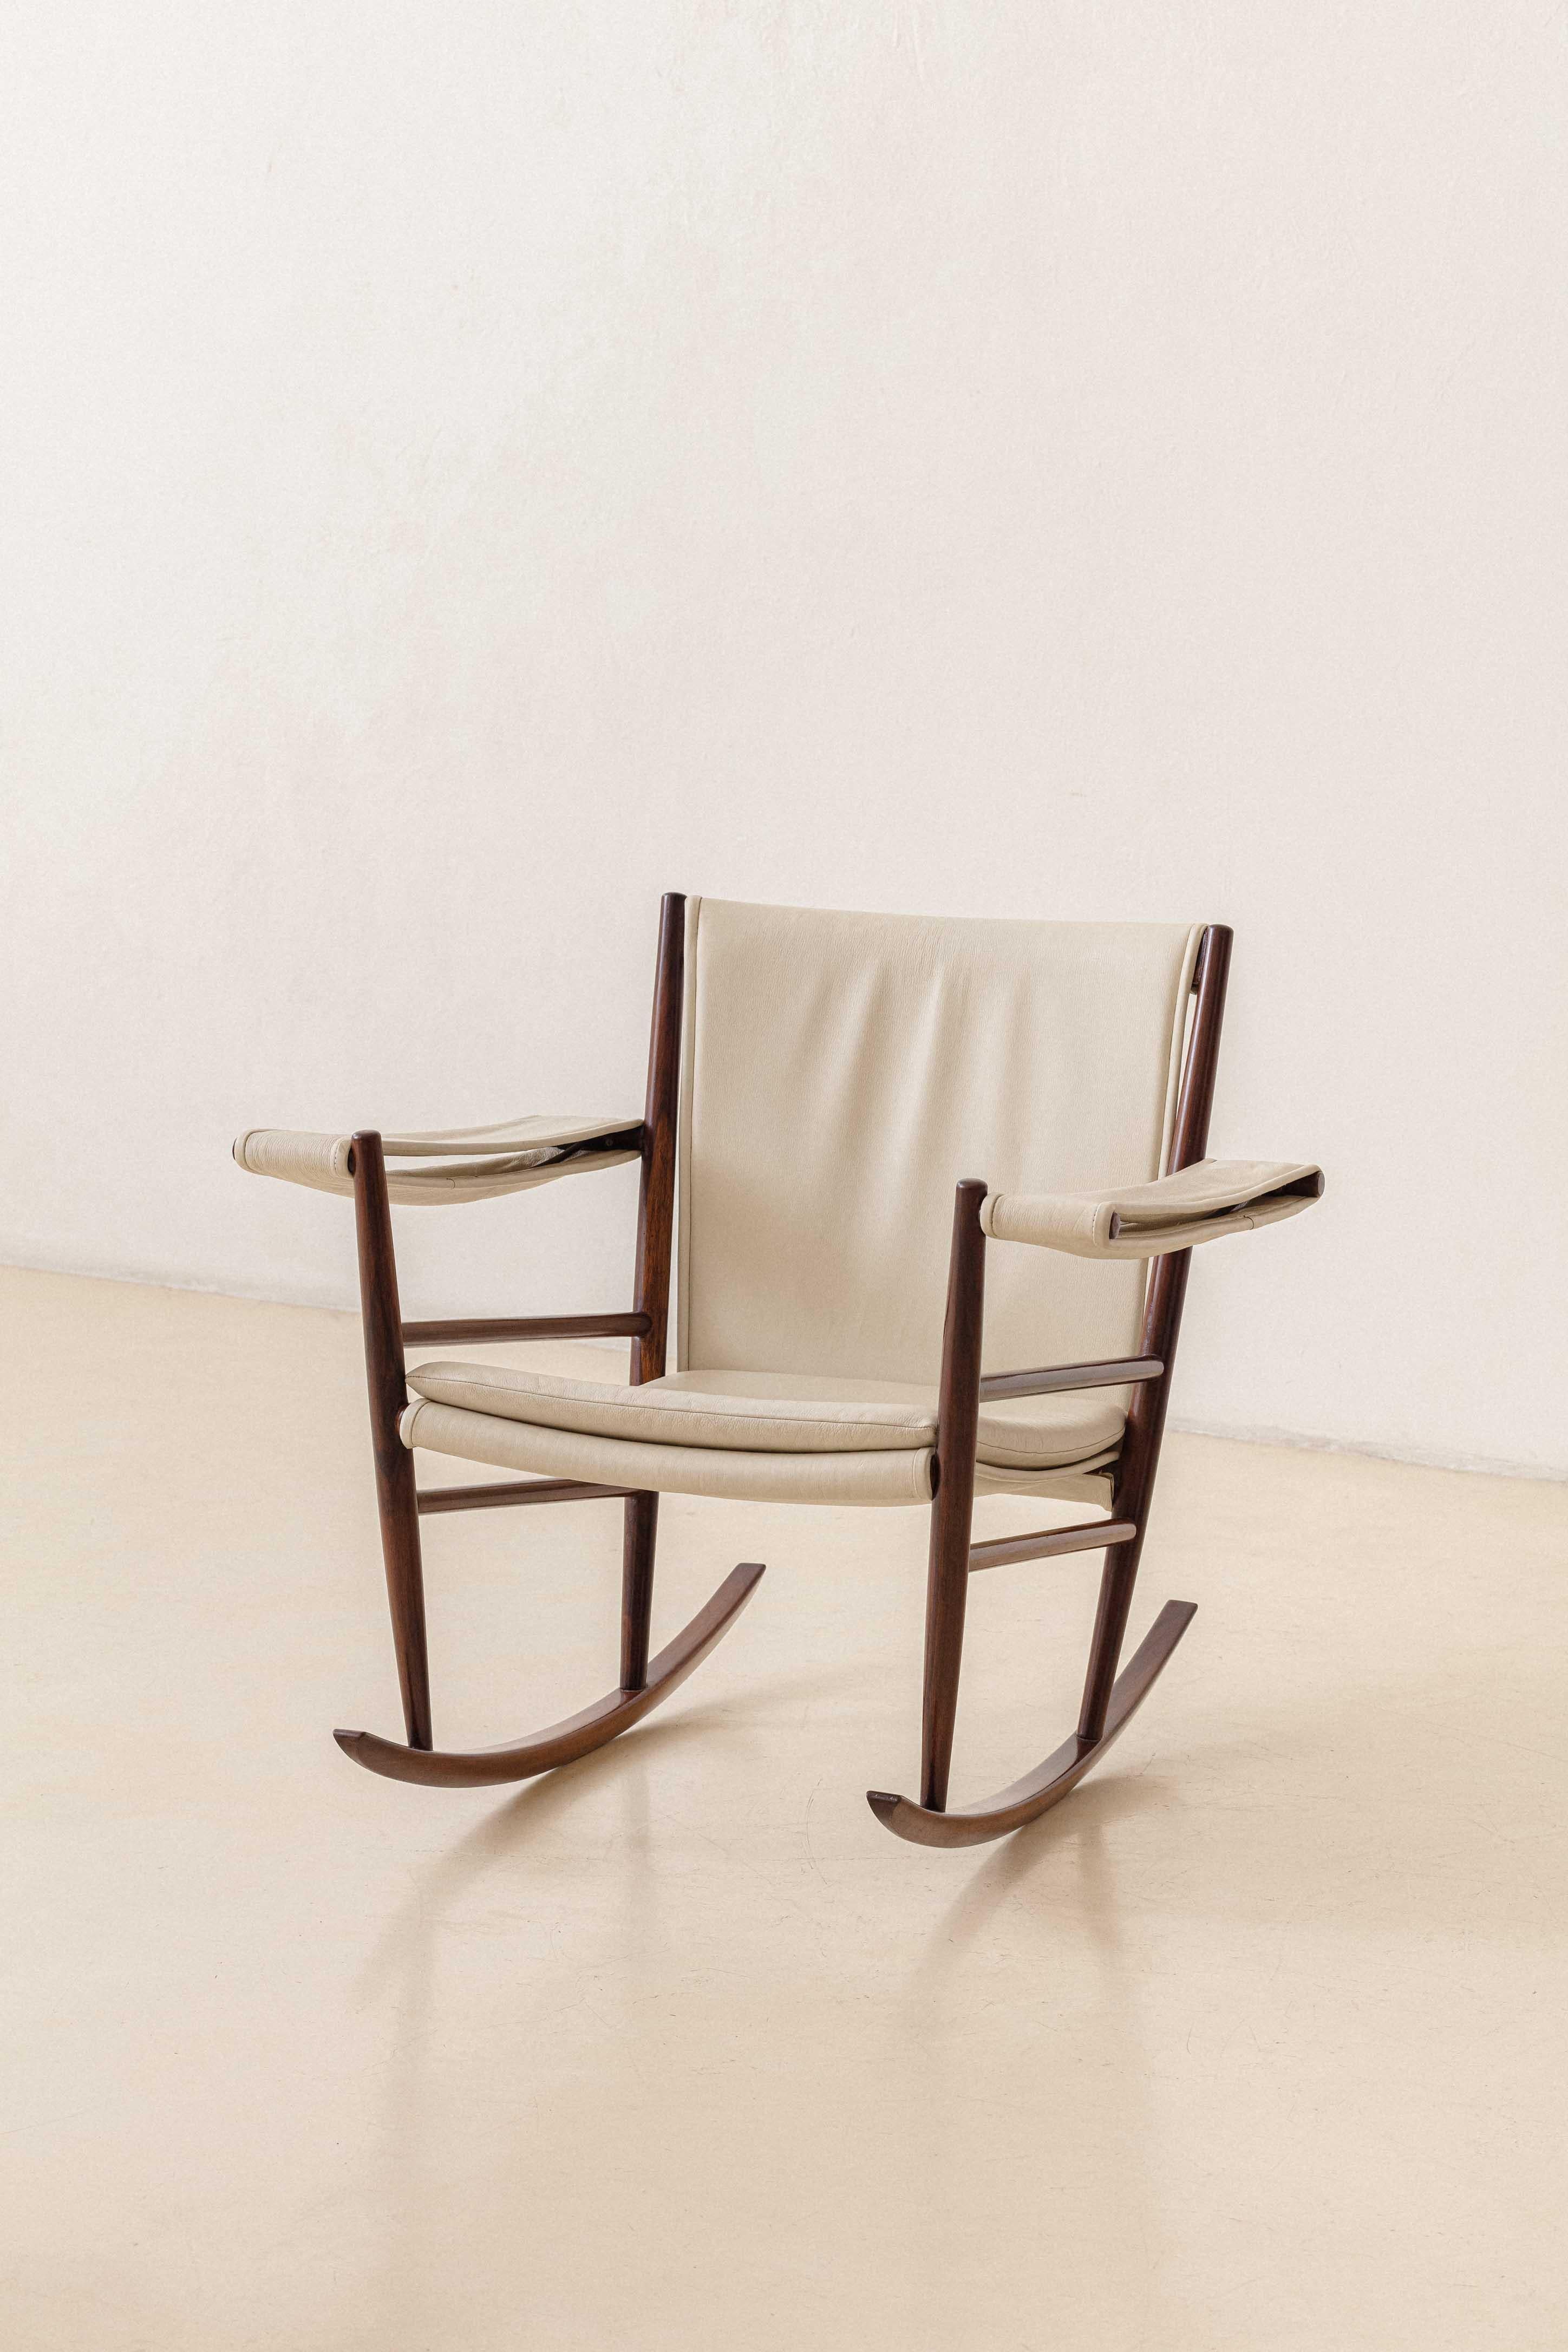 Cette chaise à bascule a été l'une des premières pièces produites par Joaquim Tenreiro (1906-1992) lors de l'ouverture de son magasin Langenbach & Tenreiro en 1947.

Bien plus qu'un designer et un artiste, Tenreiro était un intellectuel et un